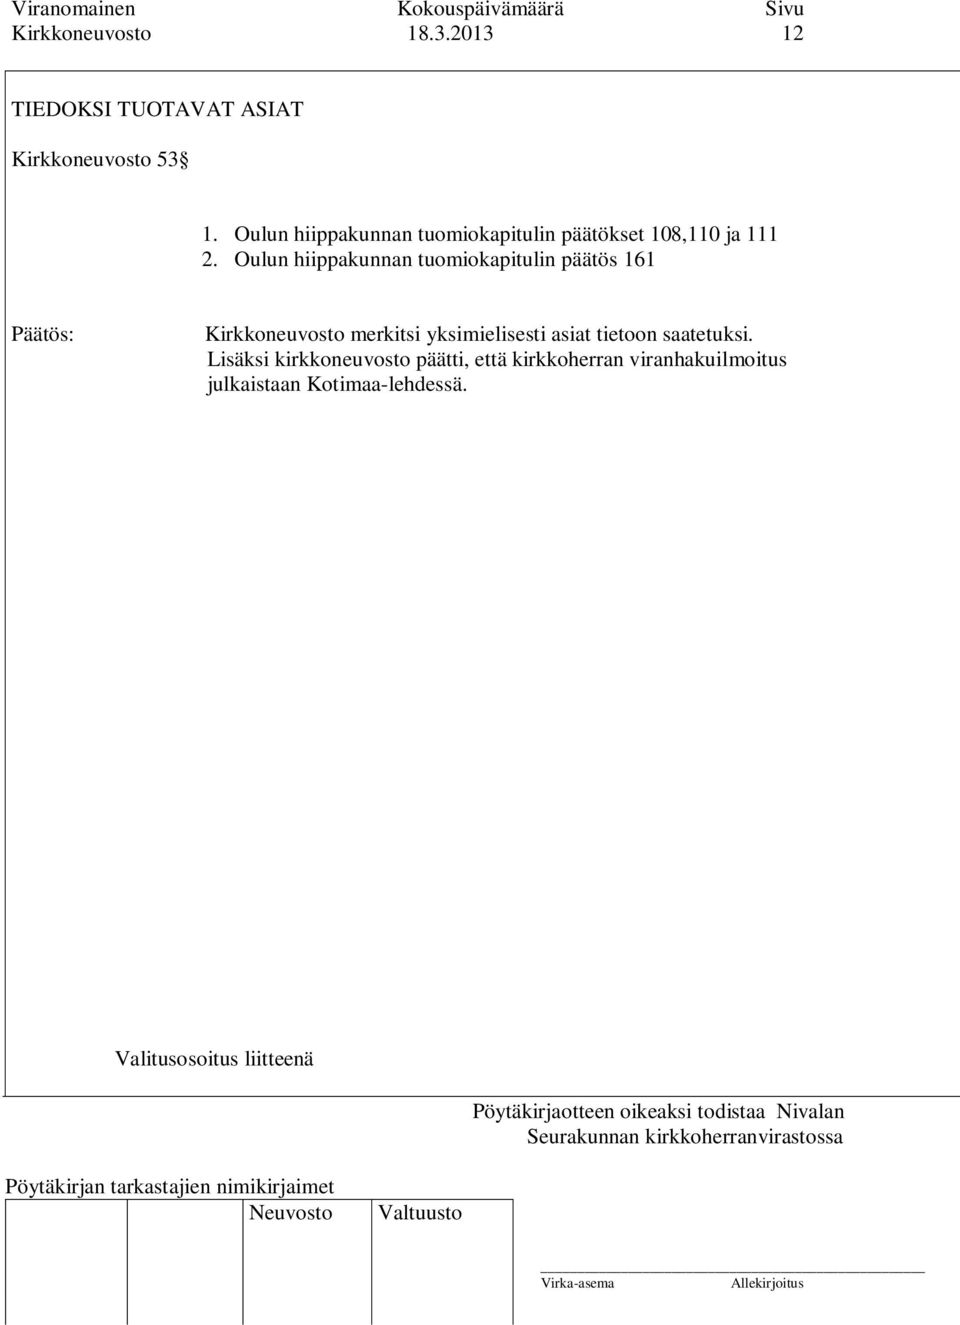 Oulun hiippakunnan tuomiokapitulin päätös 161 Kirkkoneuvosto merkitsi yksimielisesti